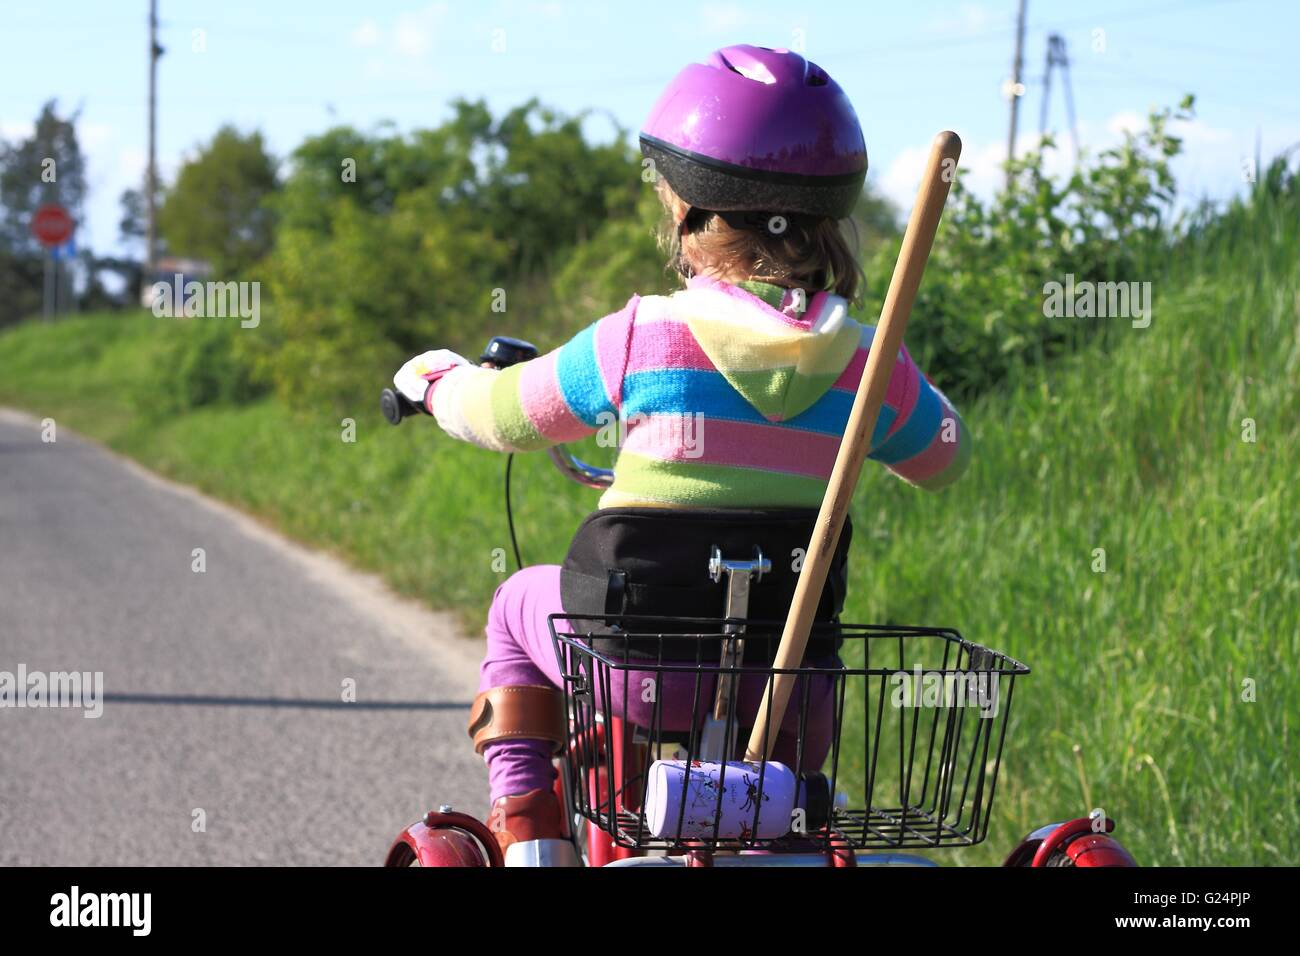 Little girl riding a bike réadaptation trois roues Banque D'Images